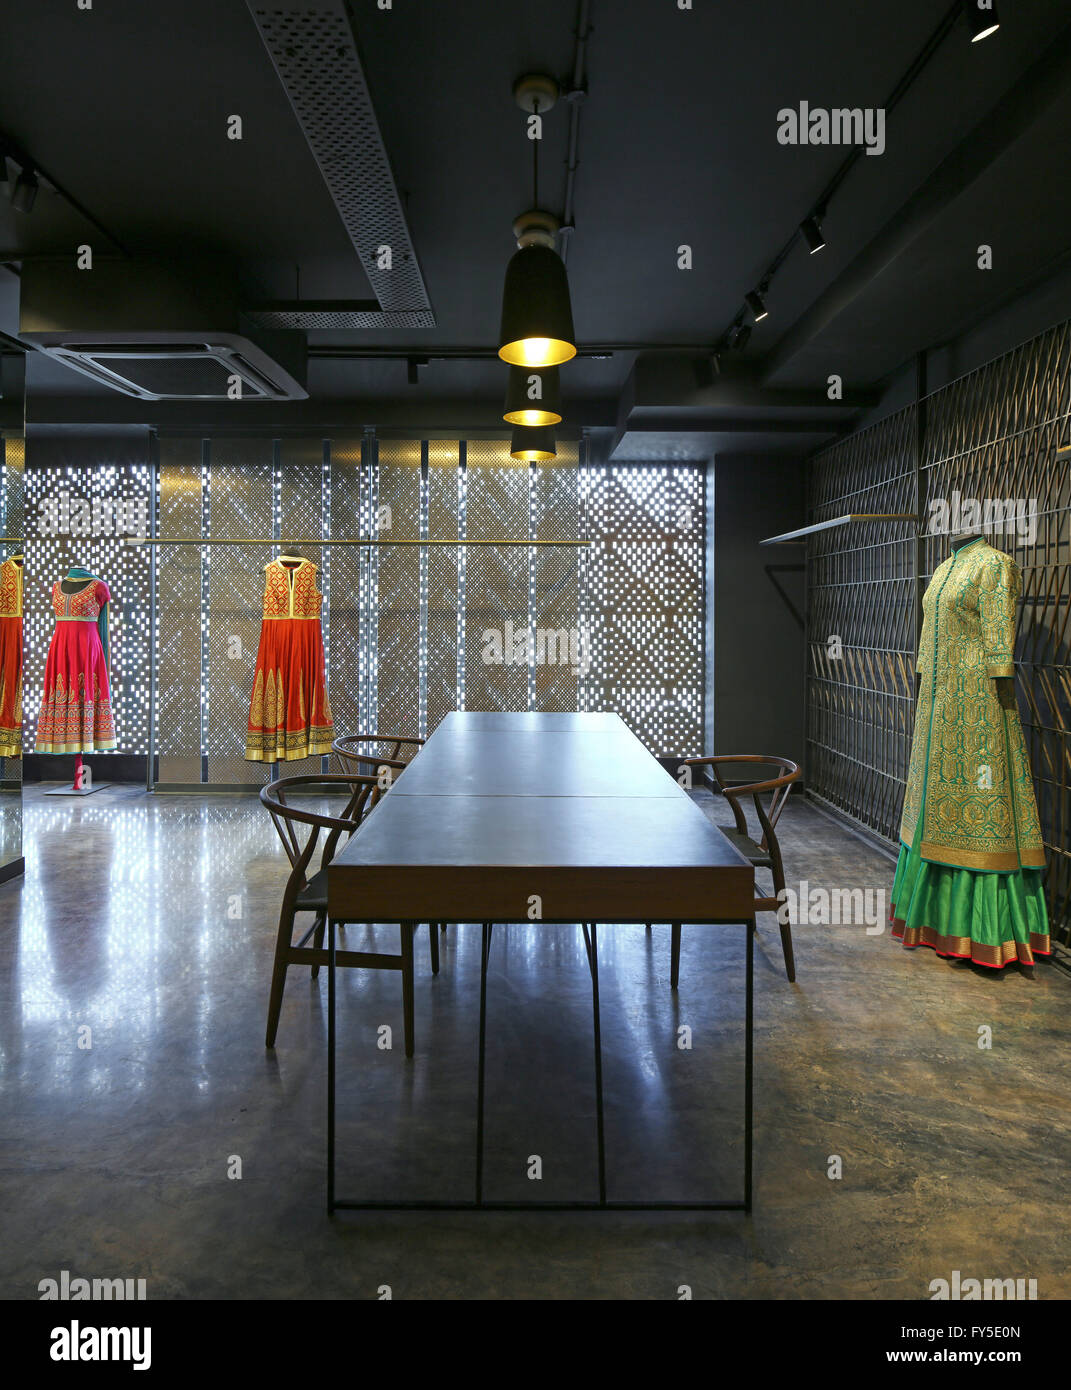 Eingangsbereich in Richtung Fenster. Abishek Gupta Shop, New Delhi, Indien. Architekt: Atelier Lotus, 2016. Stockfoto